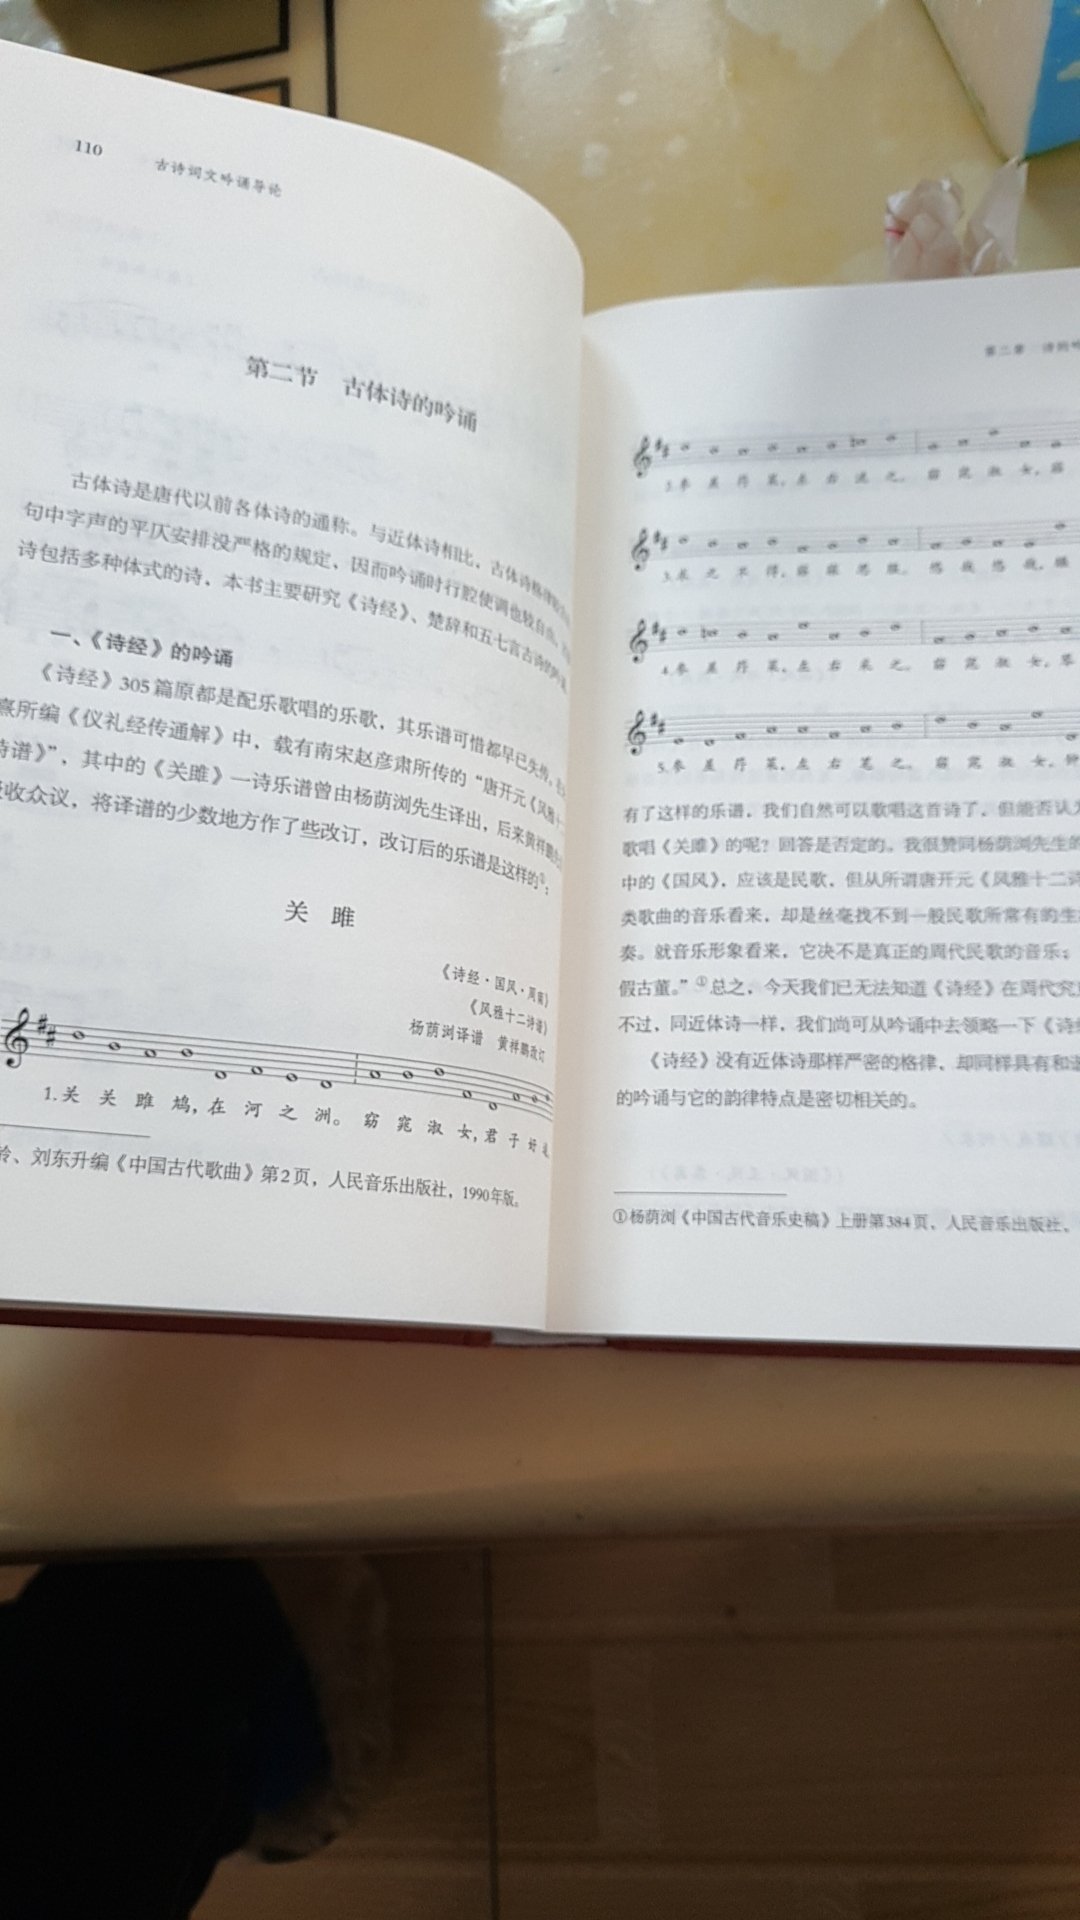 我买了一本中华书局的古诗吟诵读导论，里面配套的吟诵光盘是空的，这是订单号70526997040，这要如何解决